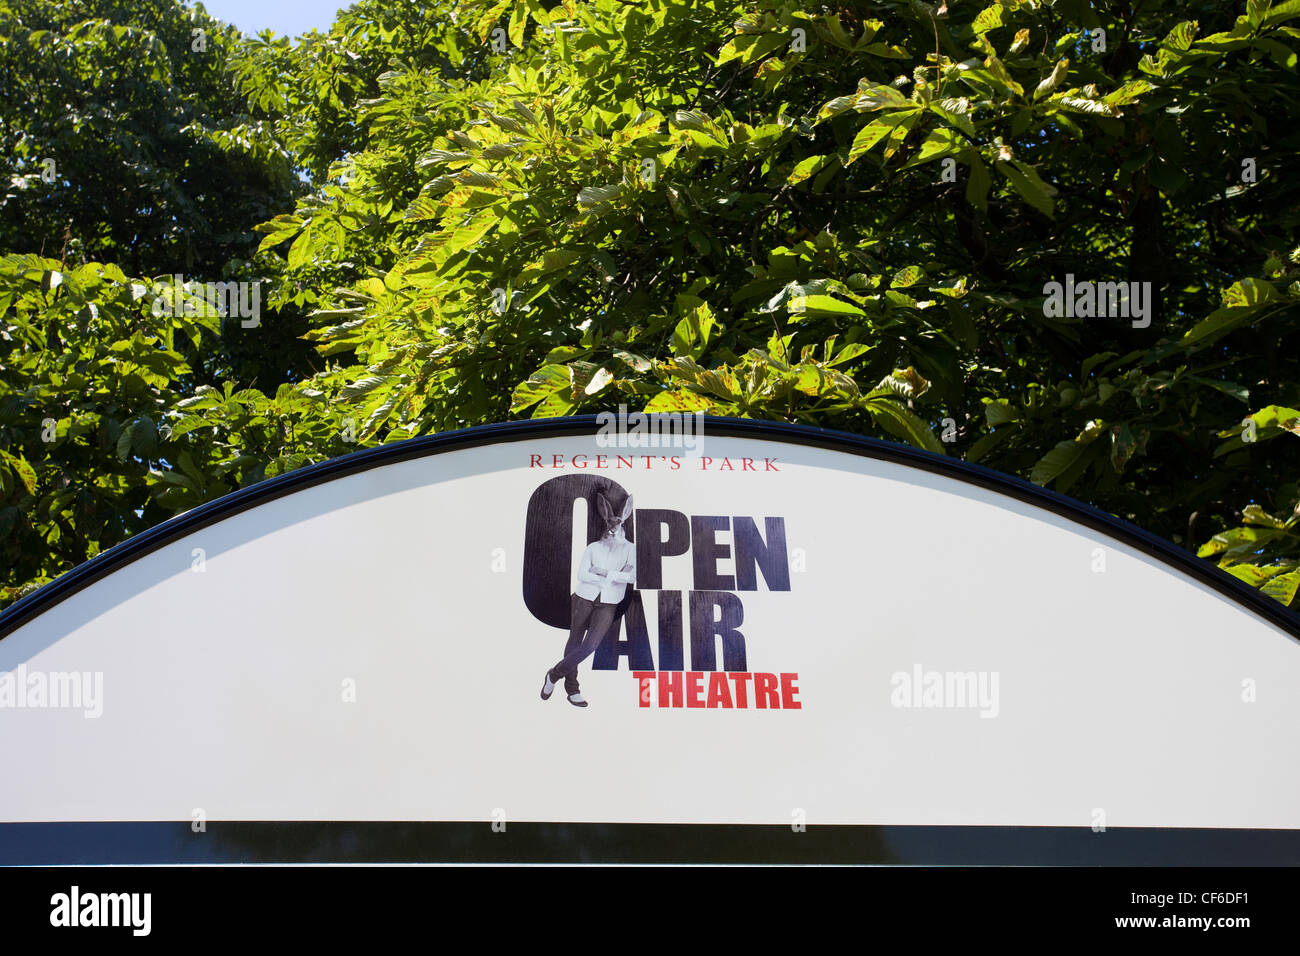 La signalisation pour Regent's Park Open Air Theatre. Banque D'Images